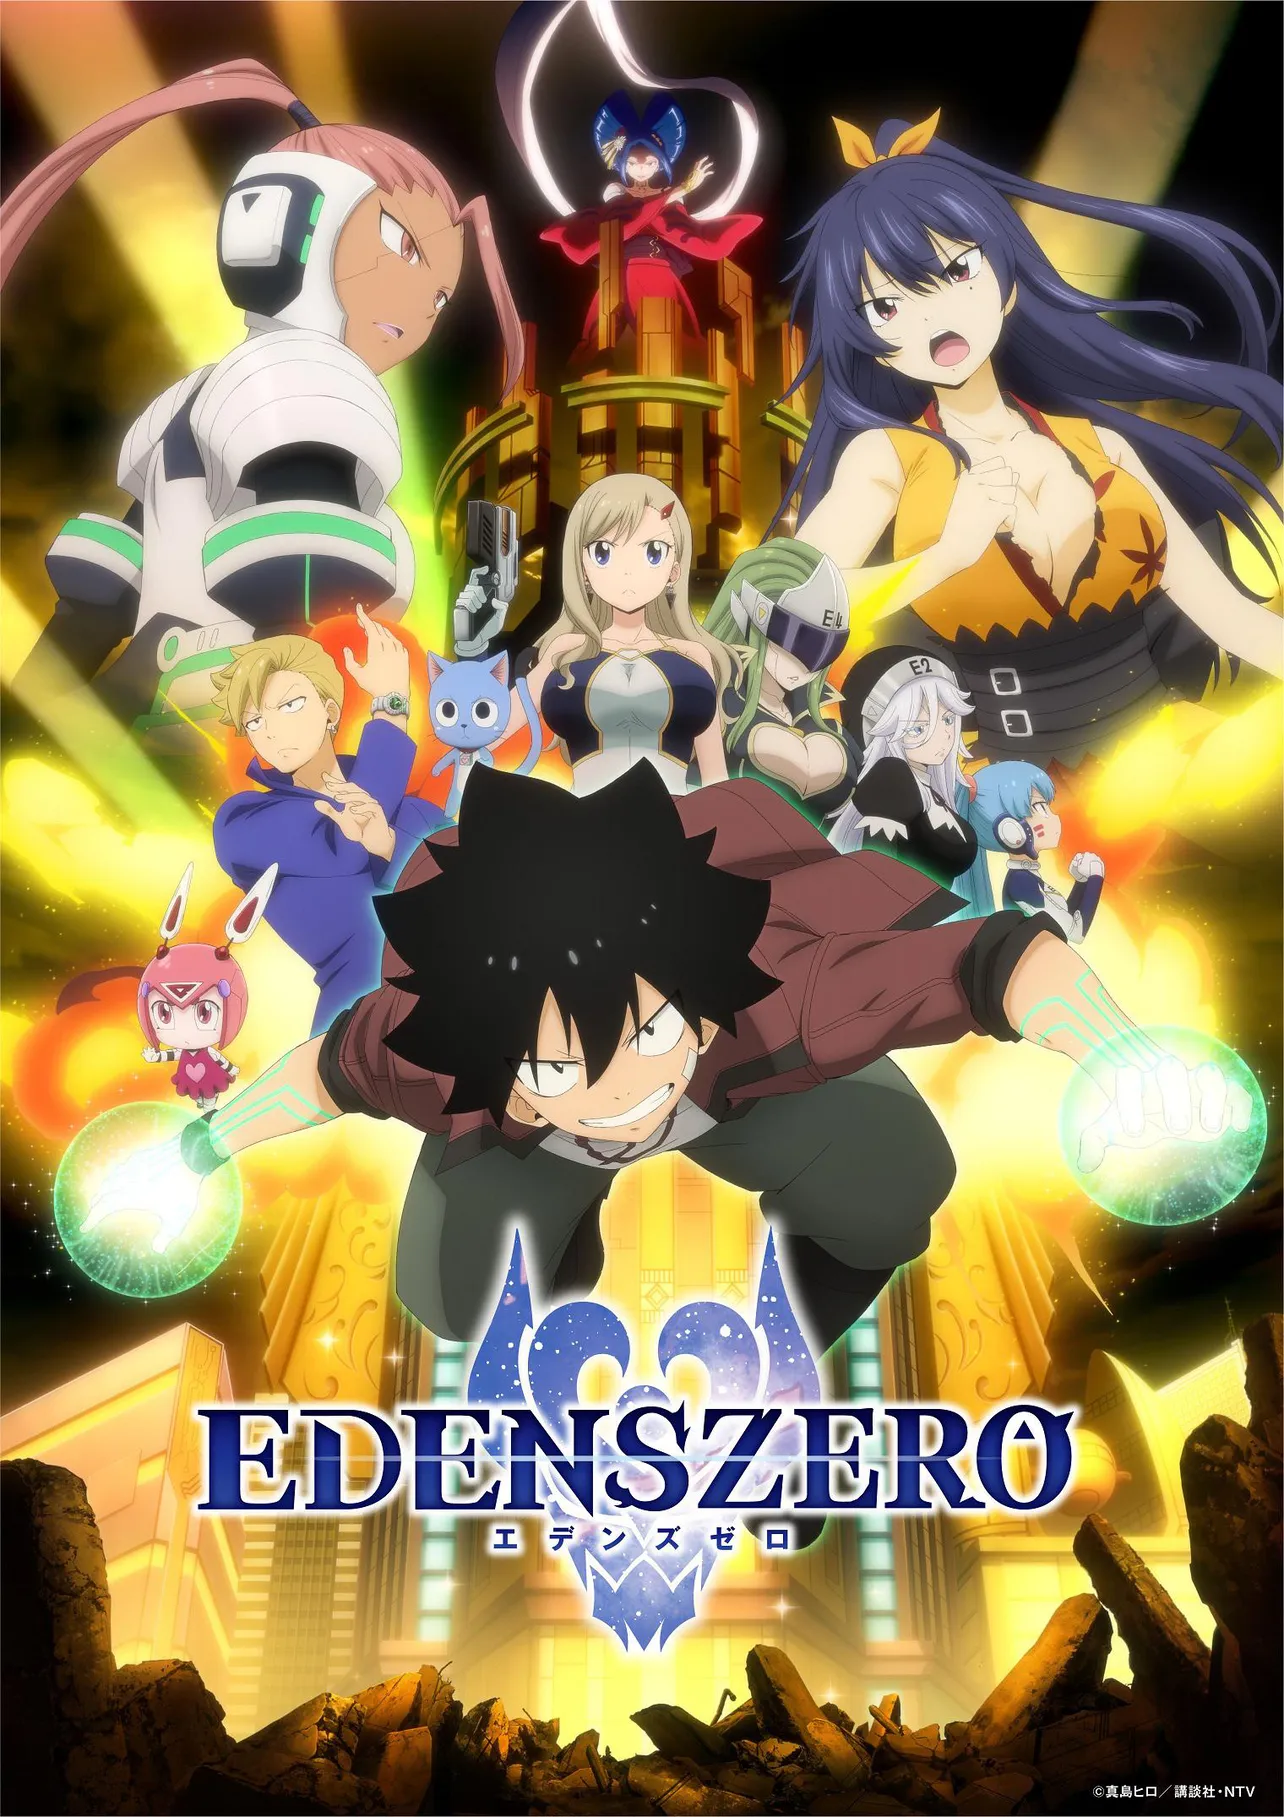 テレビアニメ「EDENS ZERO」の新キービジュアルが解禁された